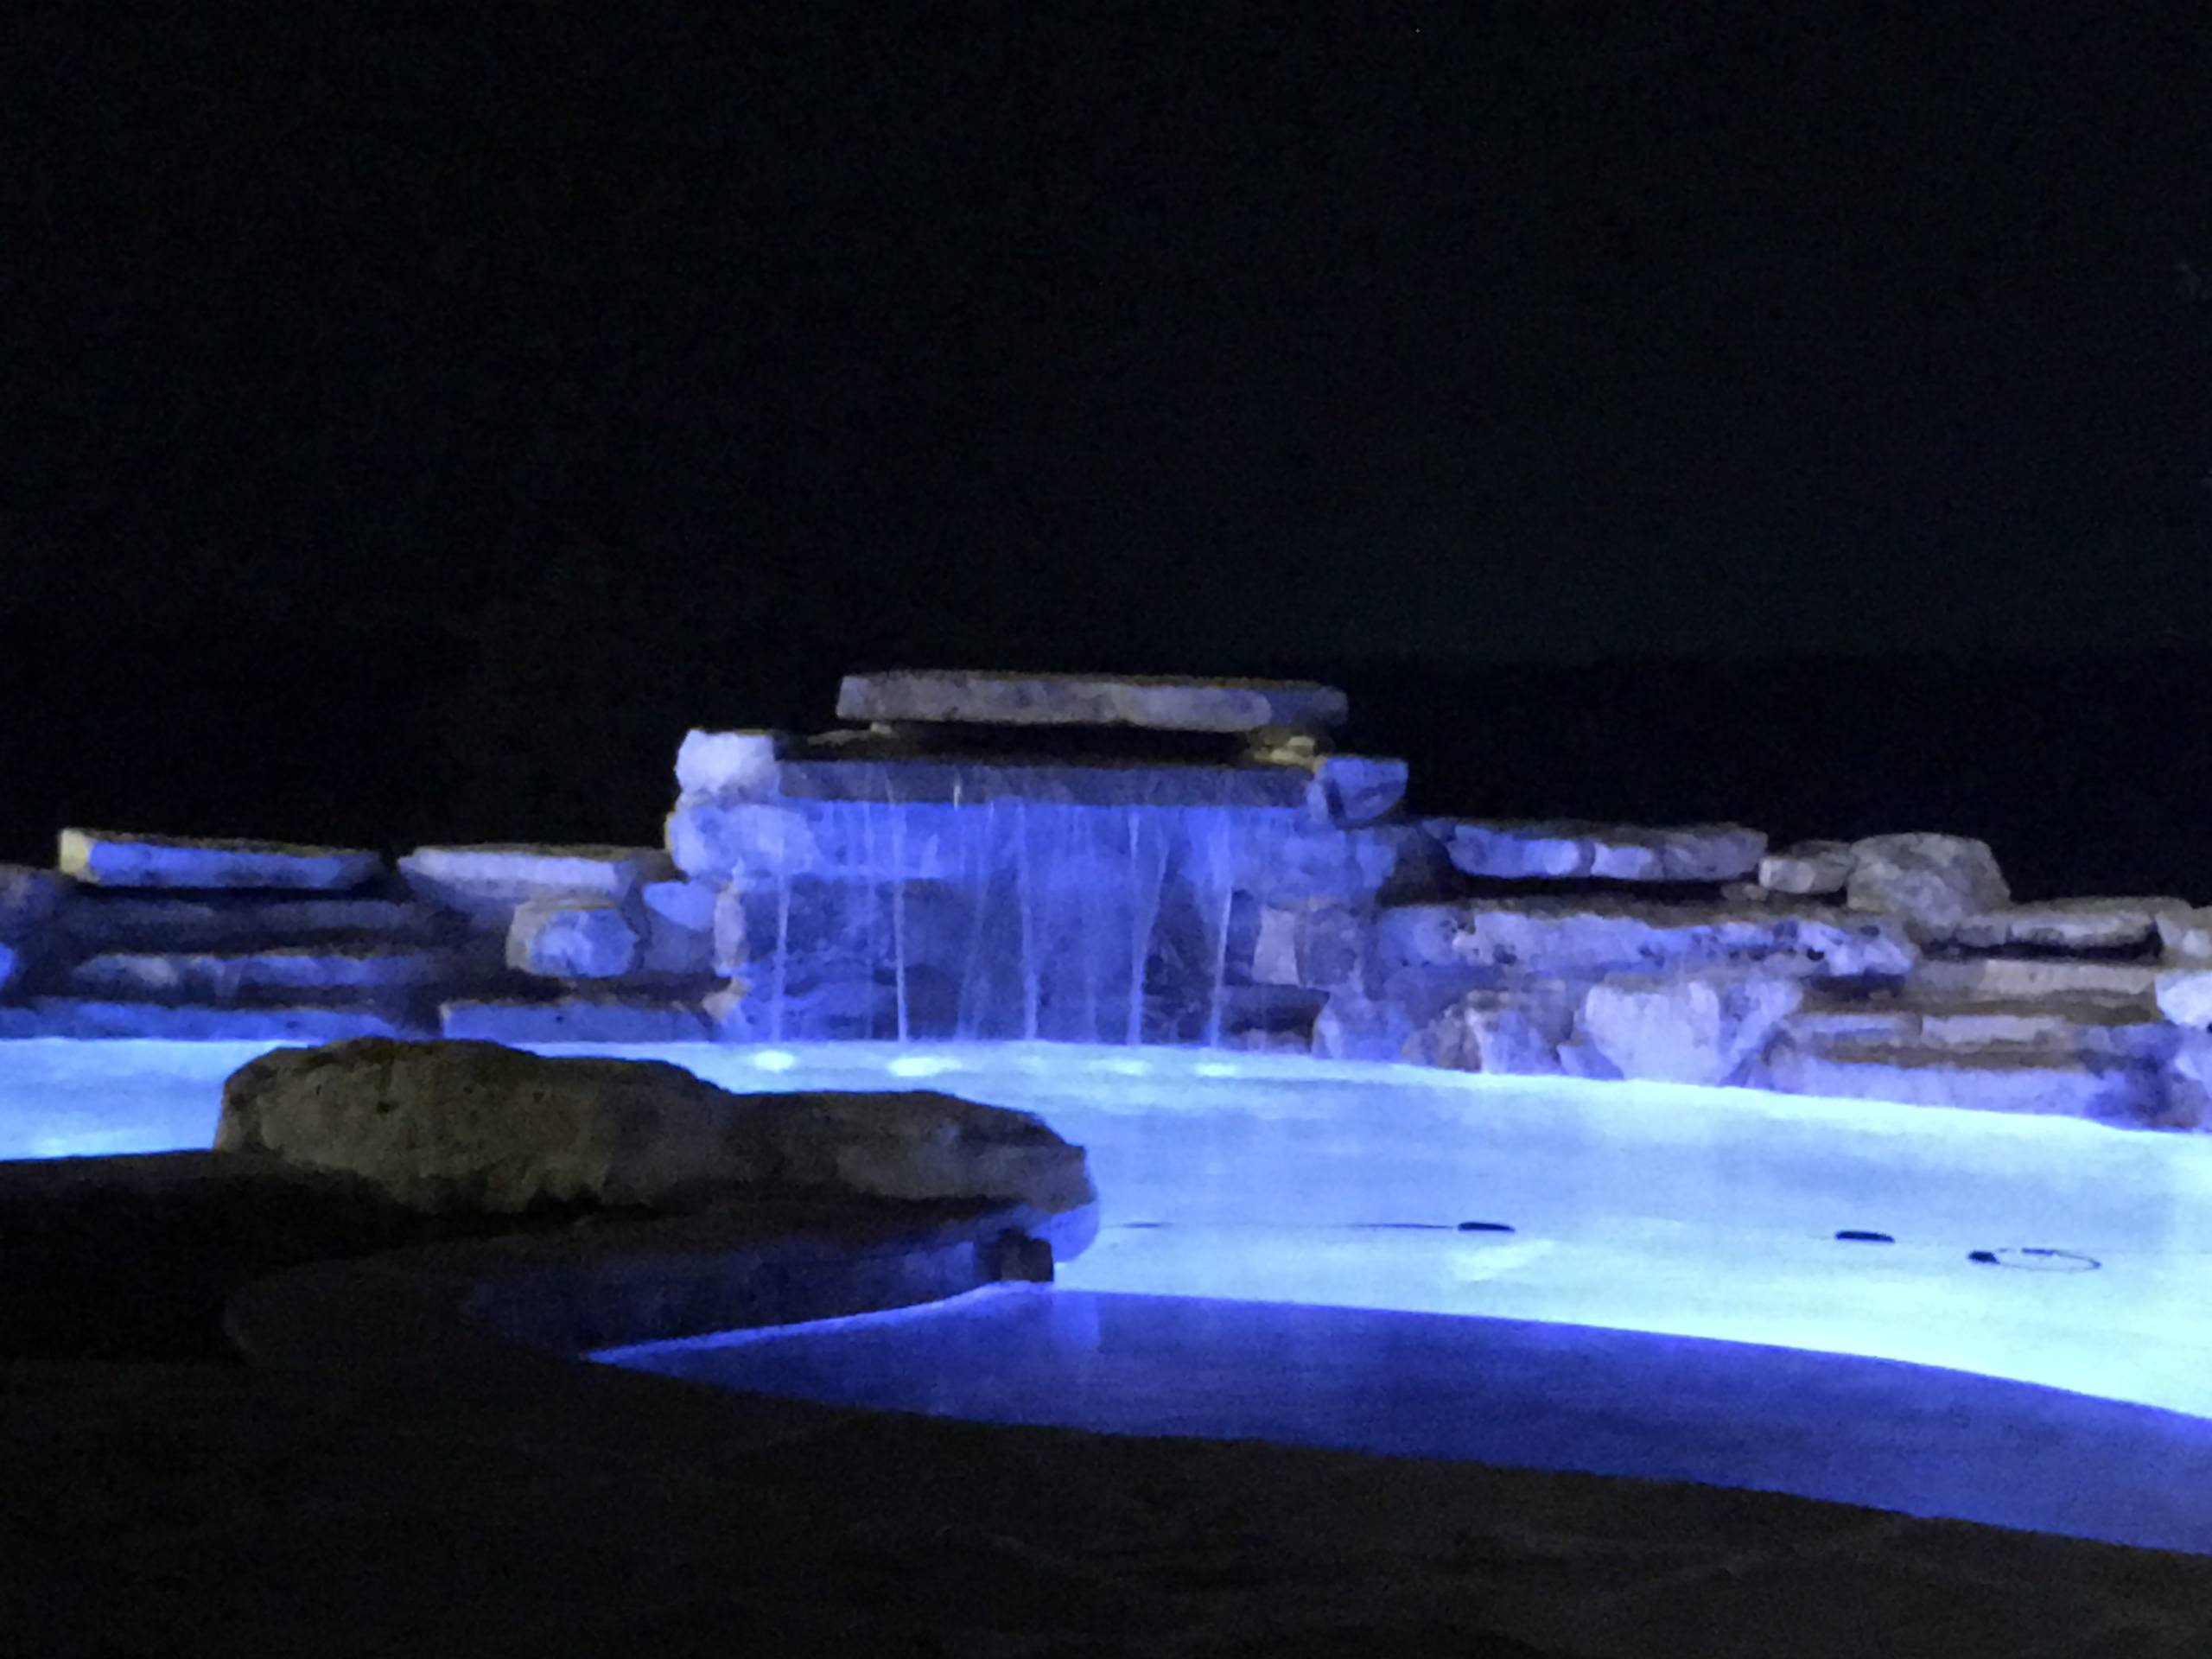 Night shot of pool